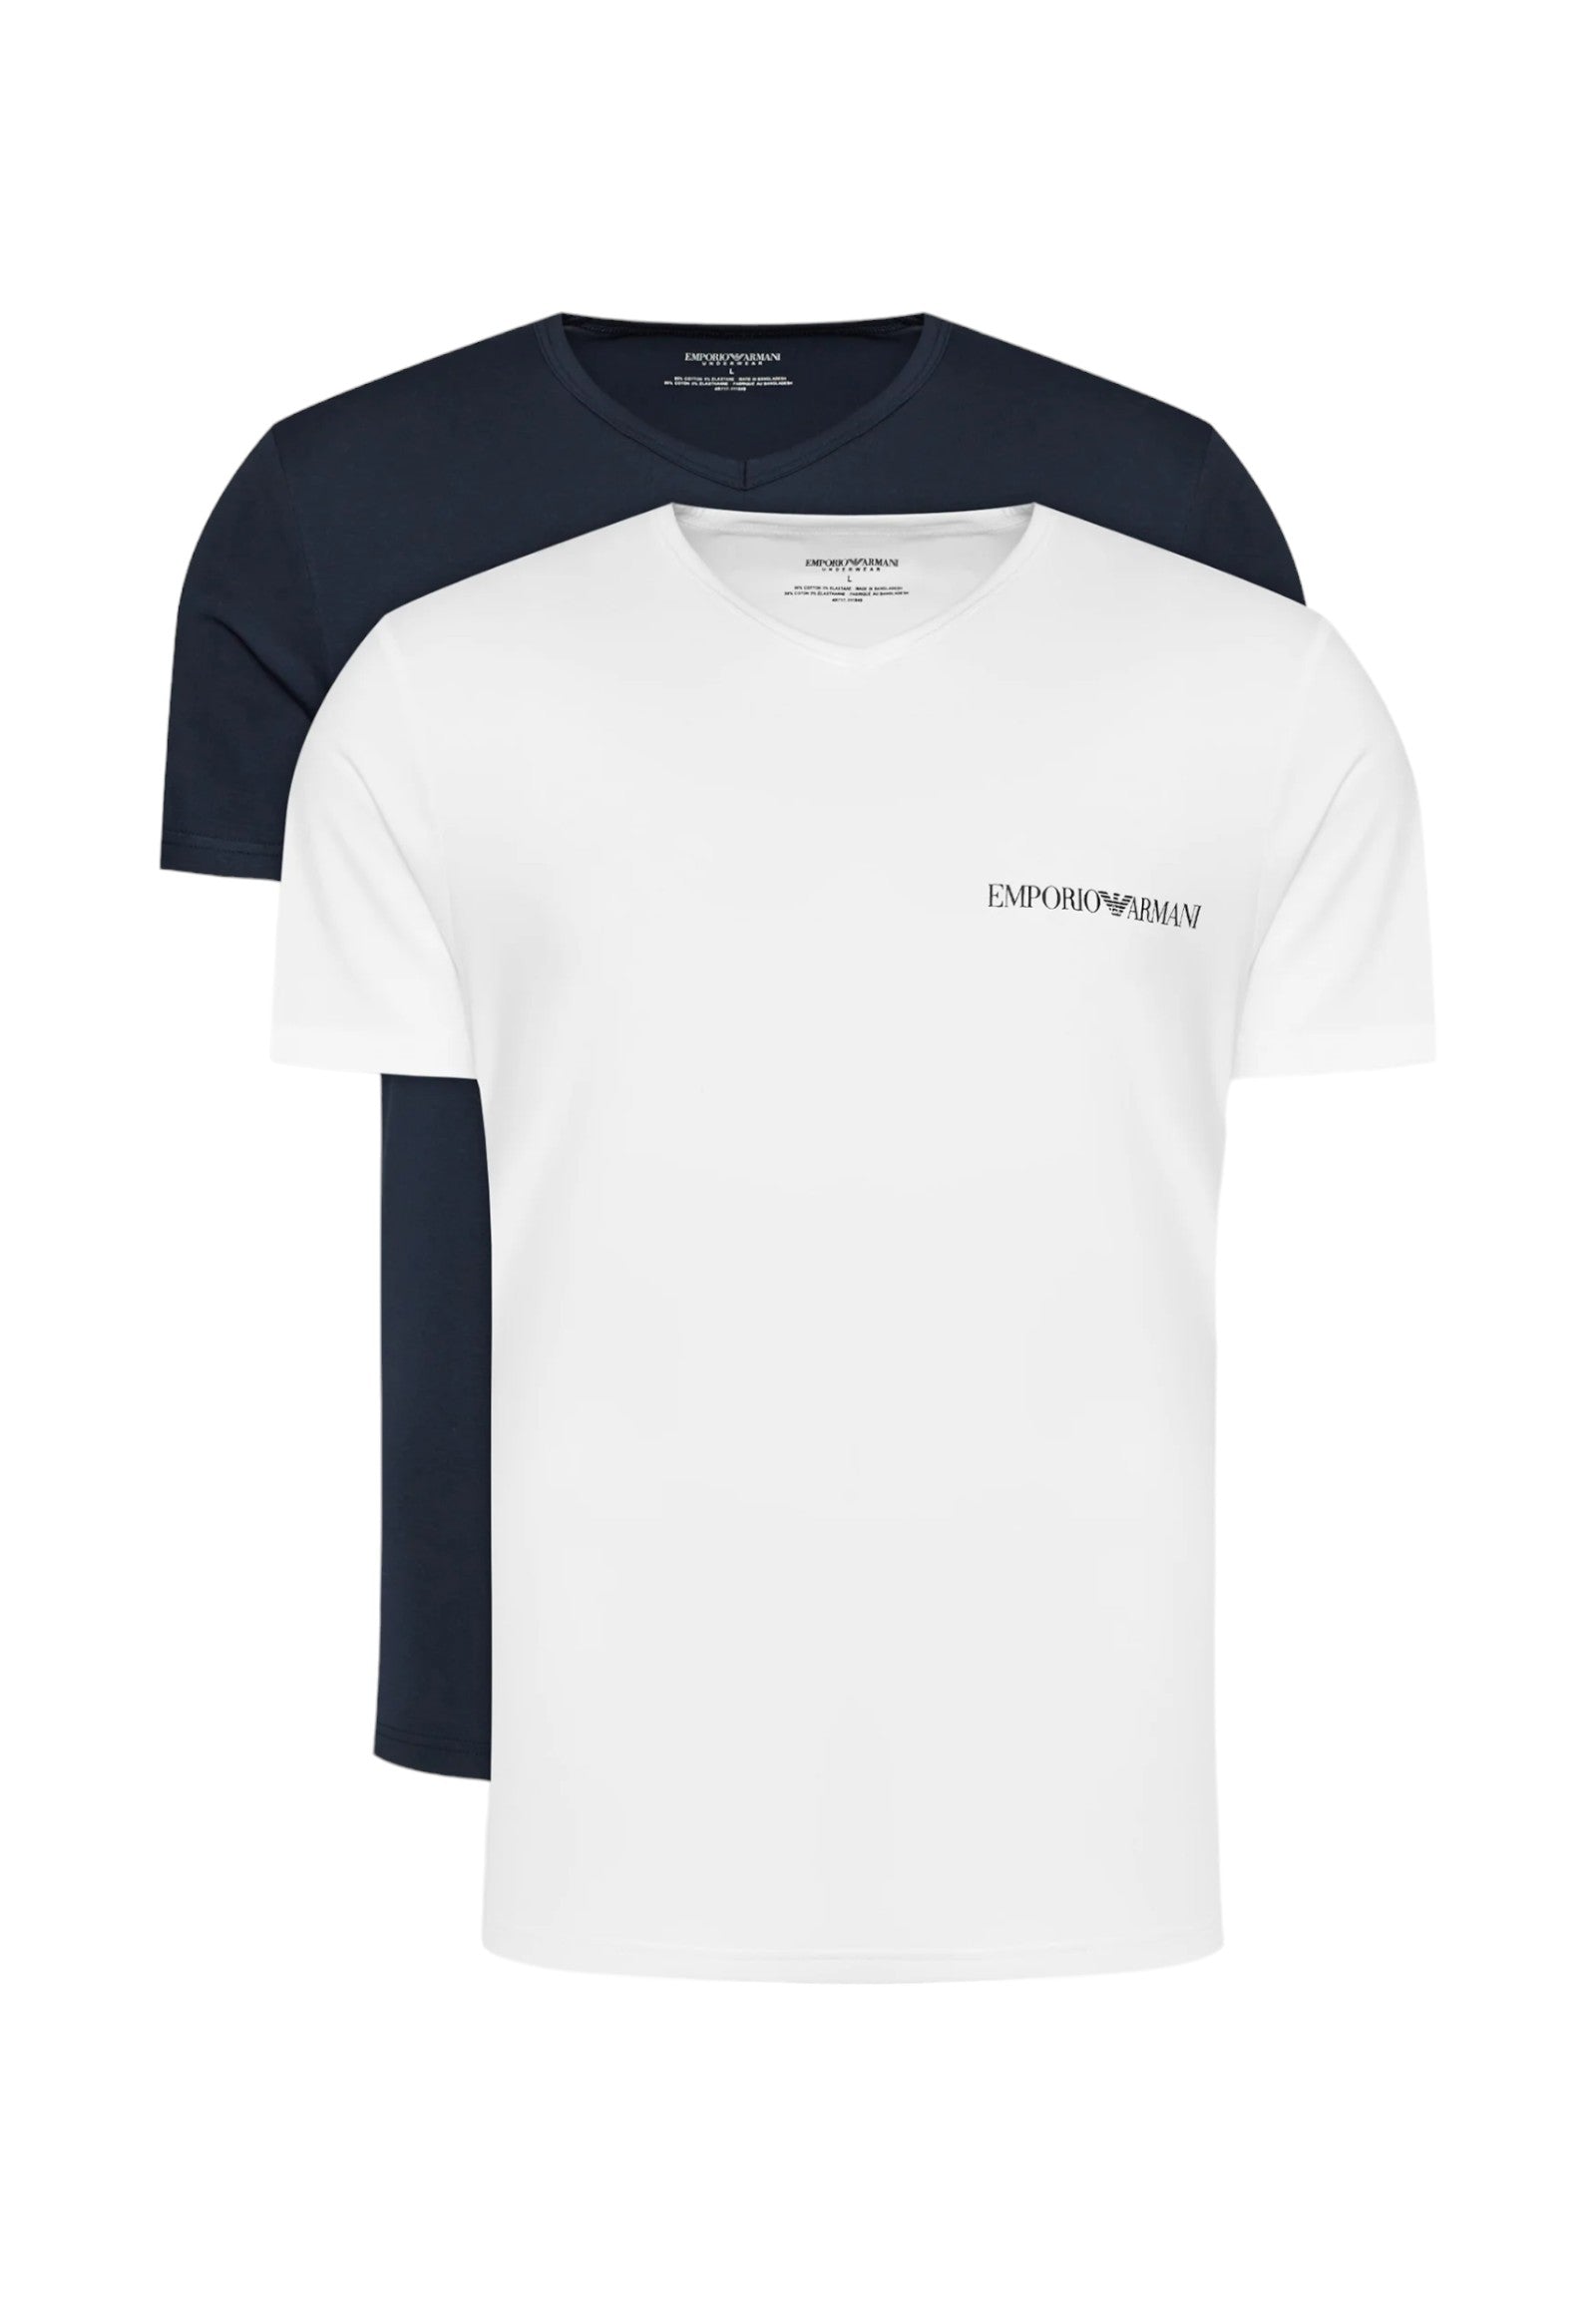 T-Shirt* 111849 Bianco, Marine